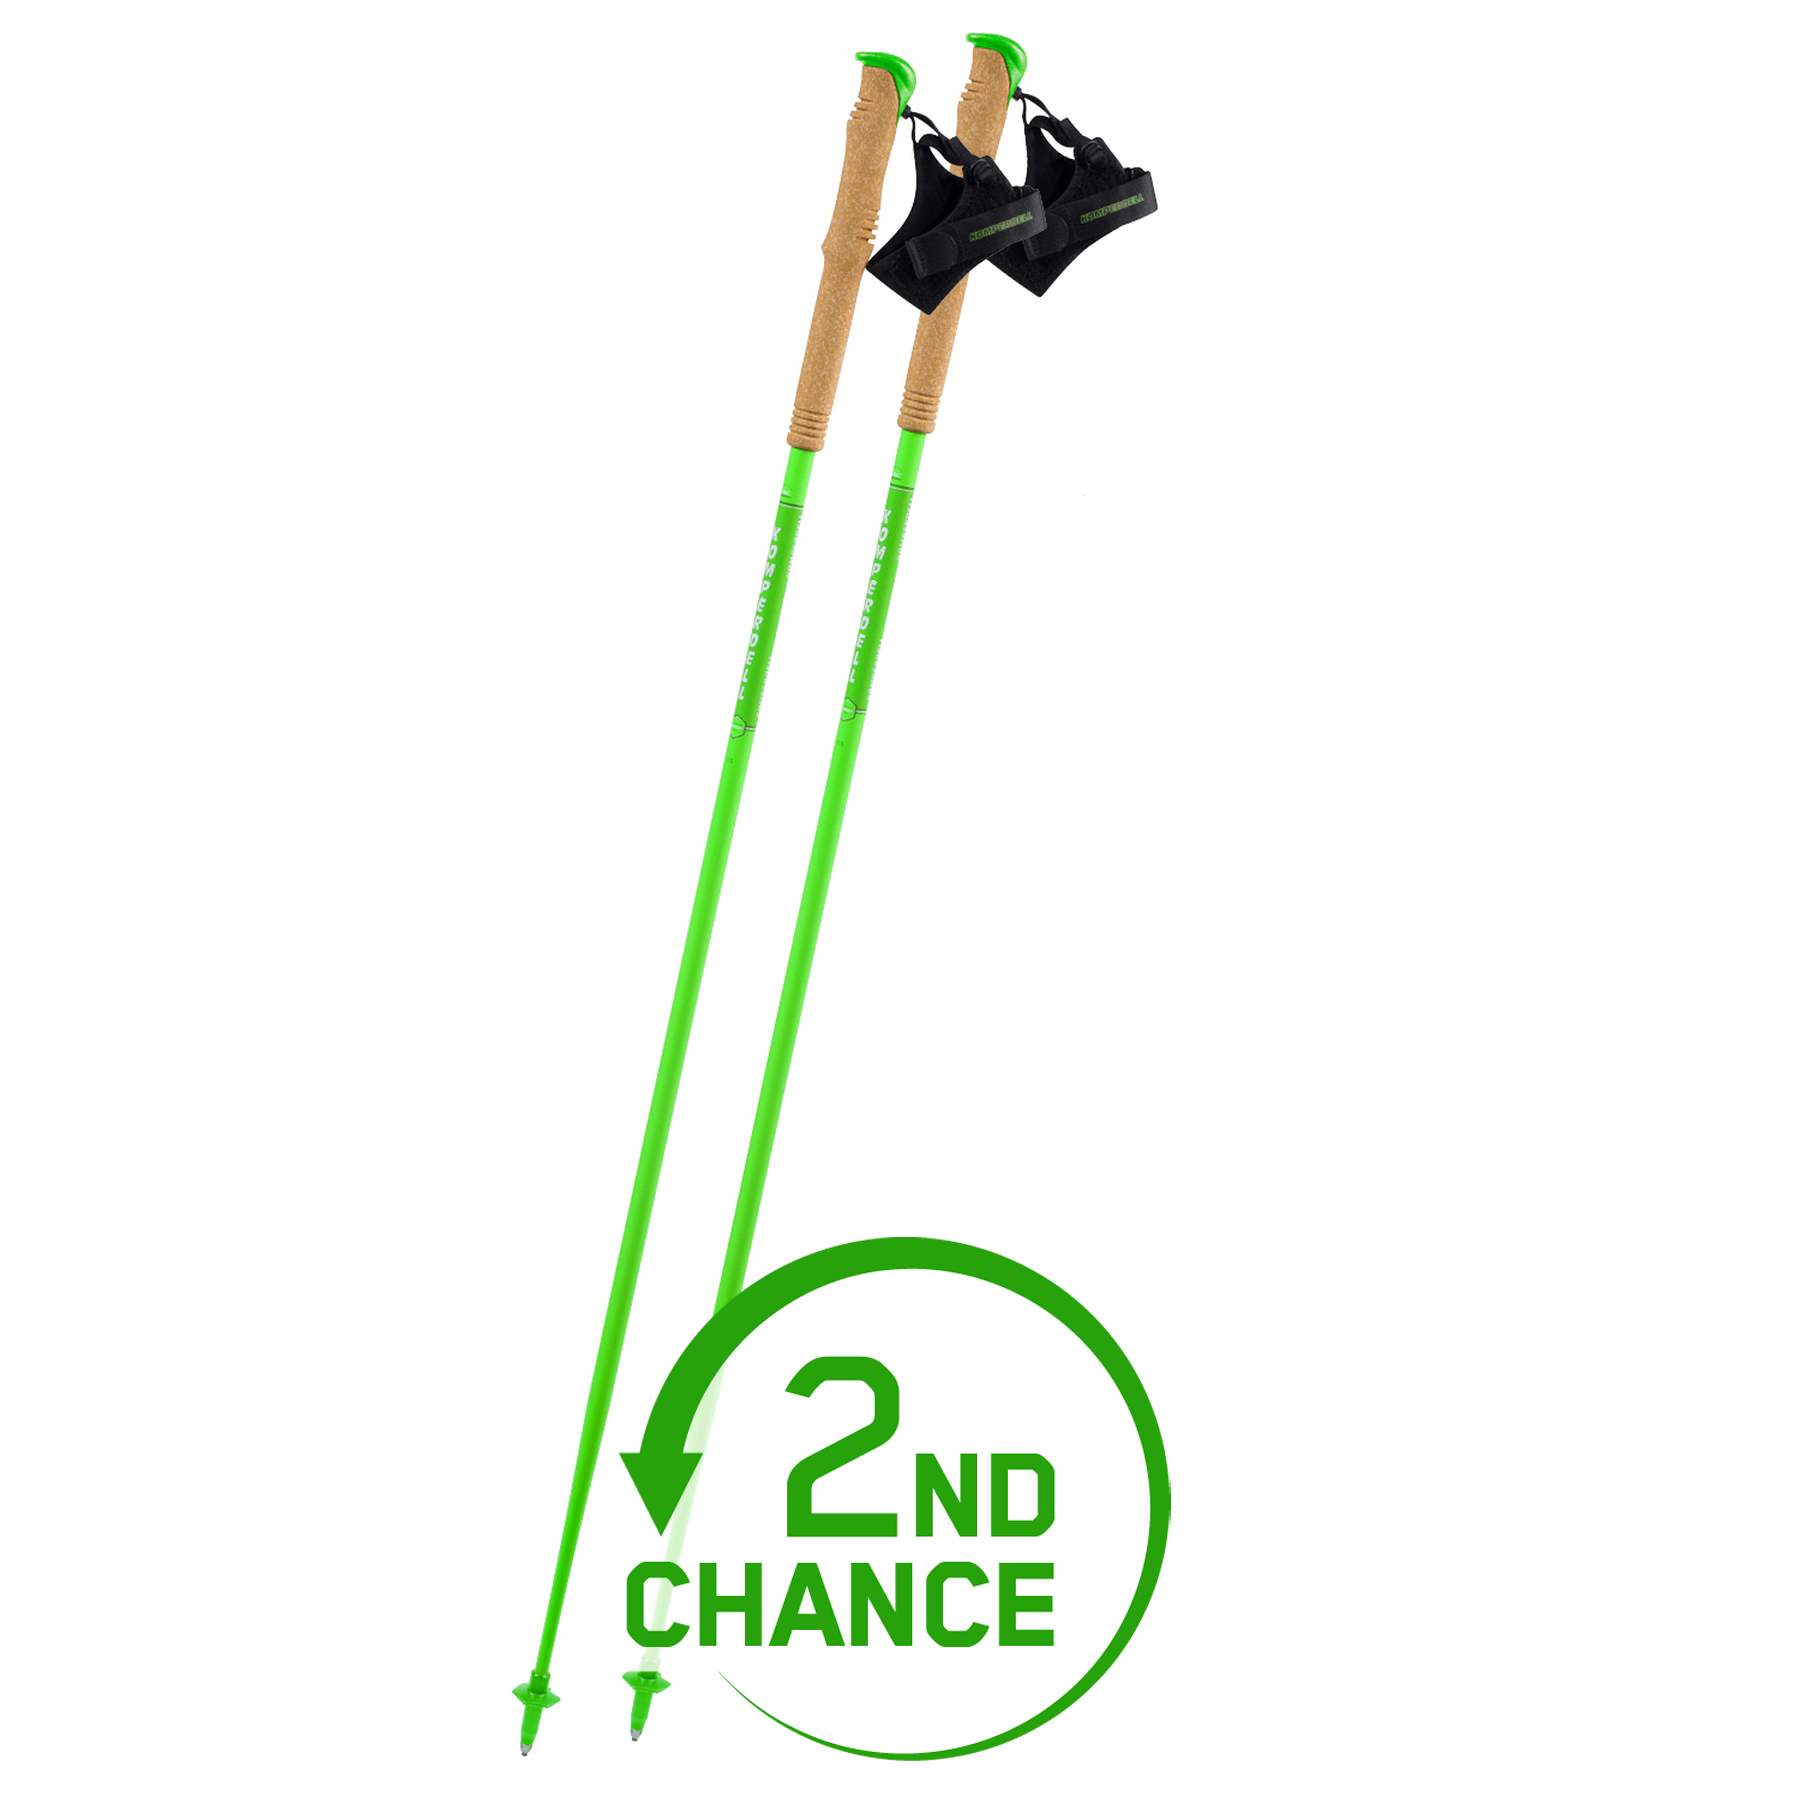 Produktbild von Komperdell Carbon C1 Team Green Trailrunningstöcke (Paar) - grün - B-Ware